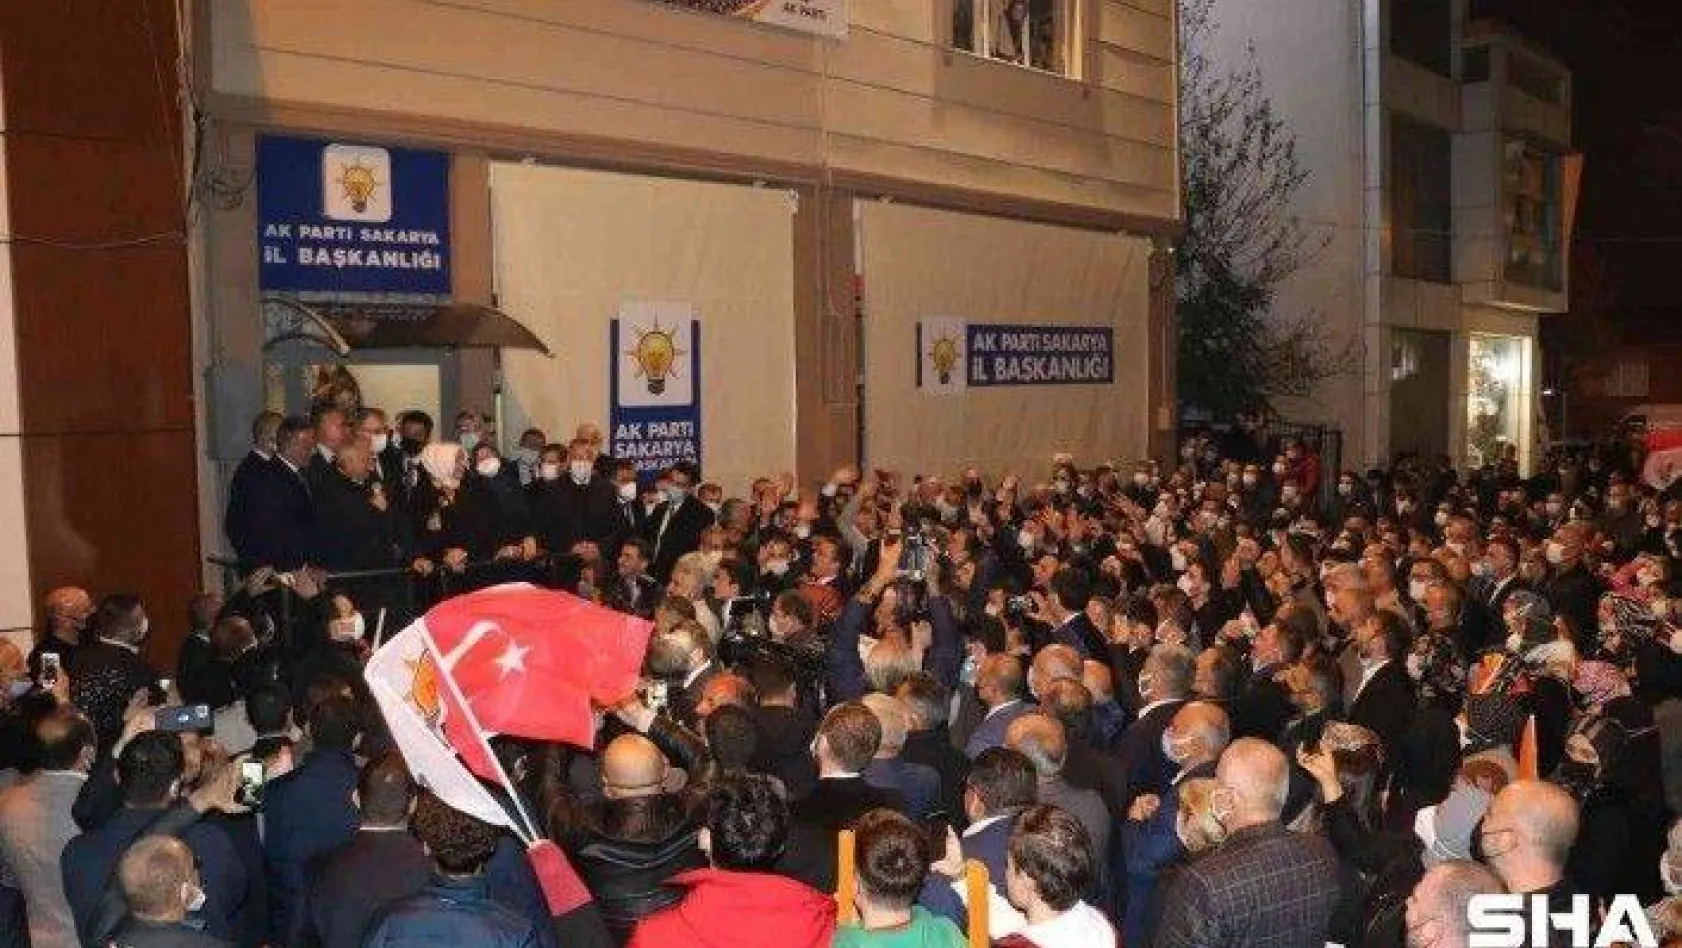 Cumhurbaşkanı Erdoğan, coşkulu kalabalığa böyle seslendi